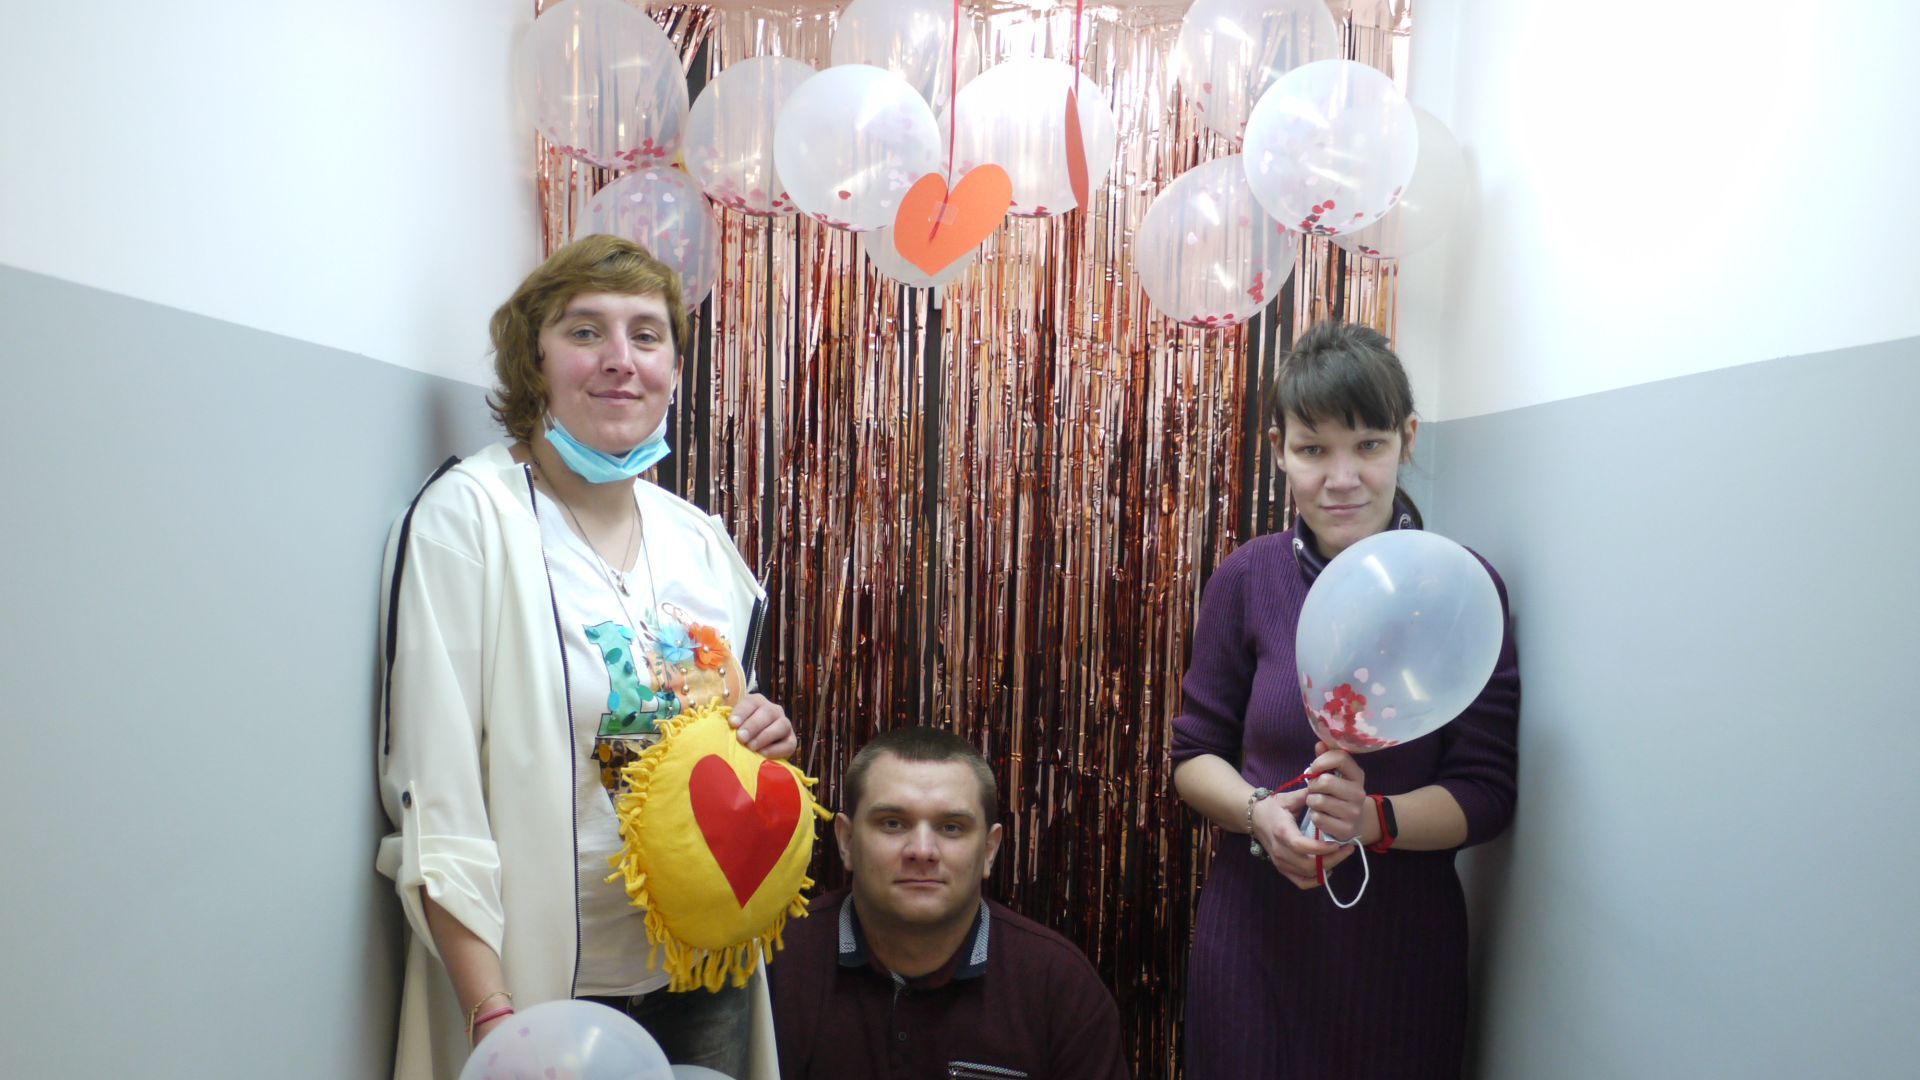 Agnieszka W., Andrzej S. i Małgorzata W. pozują na ściance udekorowanej balonami, serduszkami i serpentynami.